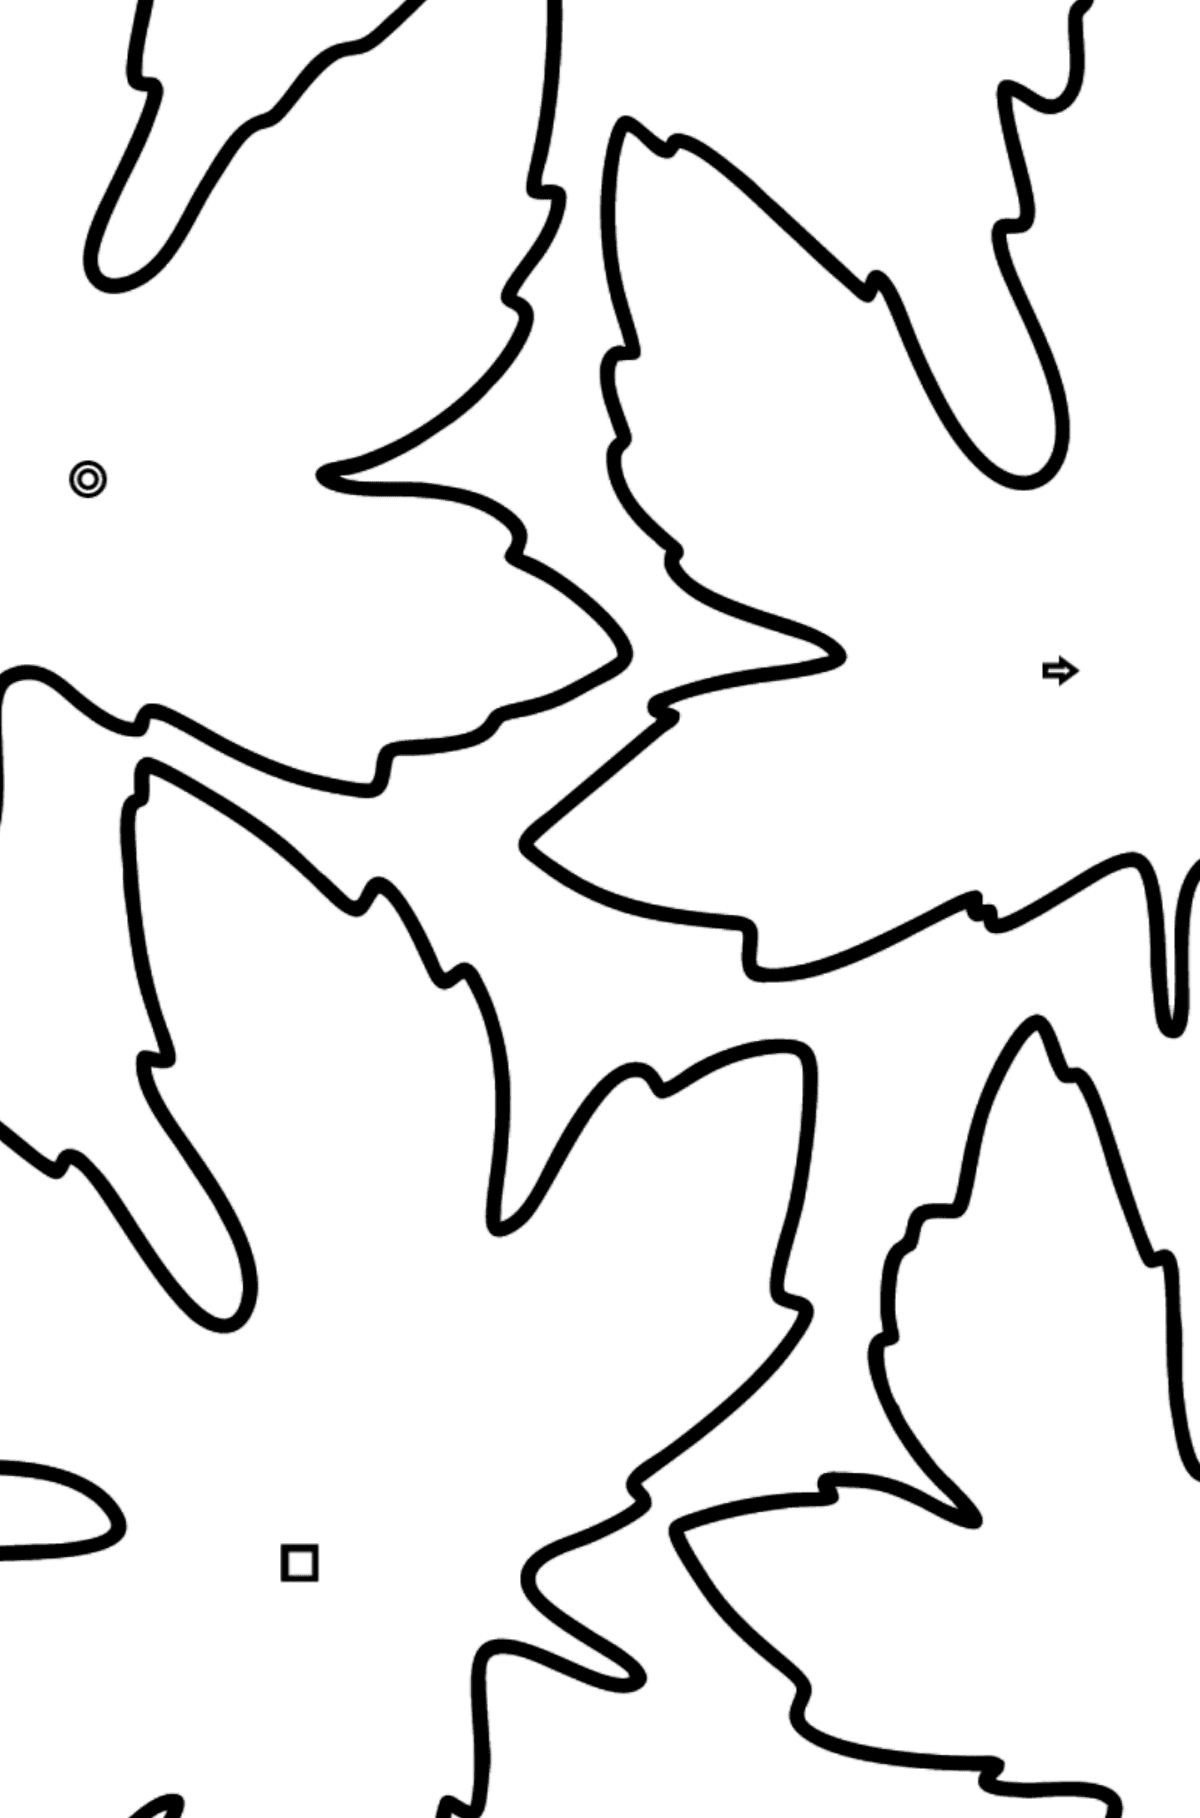 Dibujo de Hojas de Arce para colorear - Colorear por Formas Geométricas para Niños